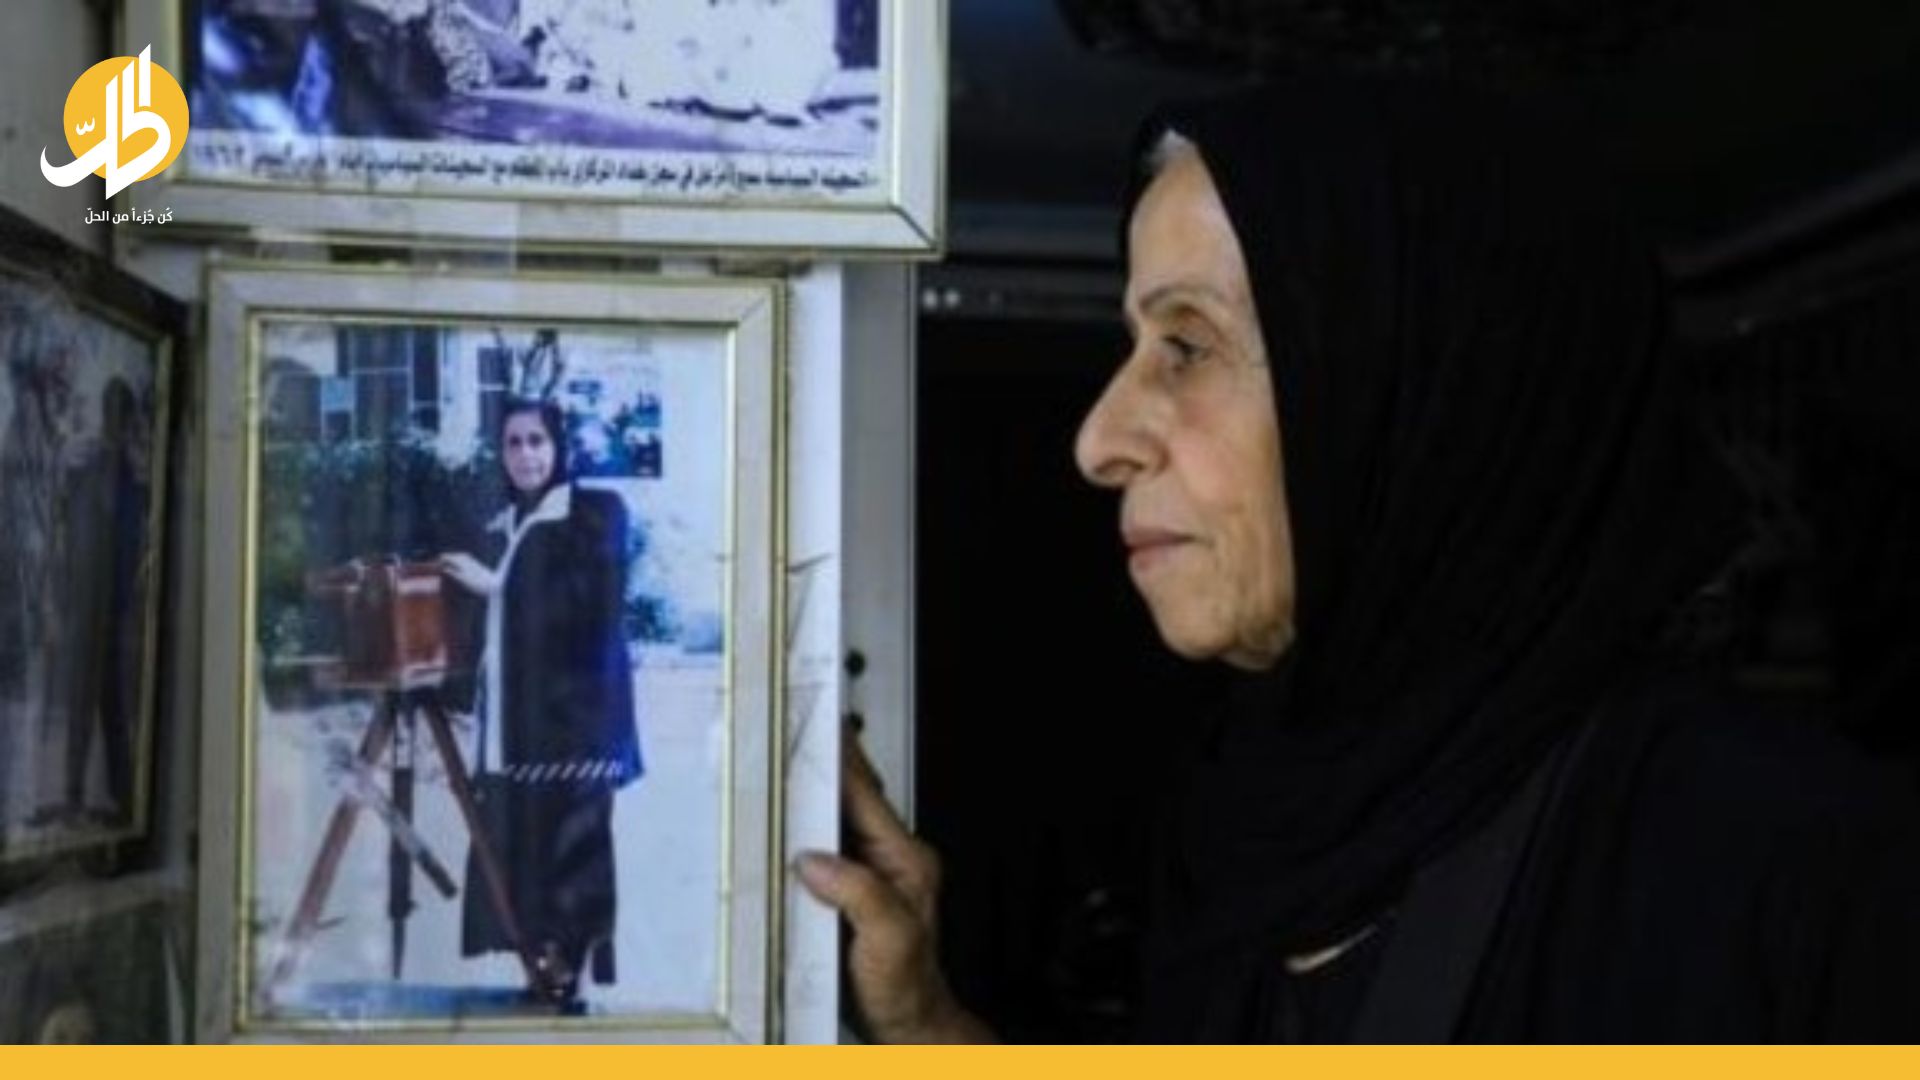 سميرة مزعل.. عراقية سبعينية قاومت “حزب البعث” والمجتمع بعدستها